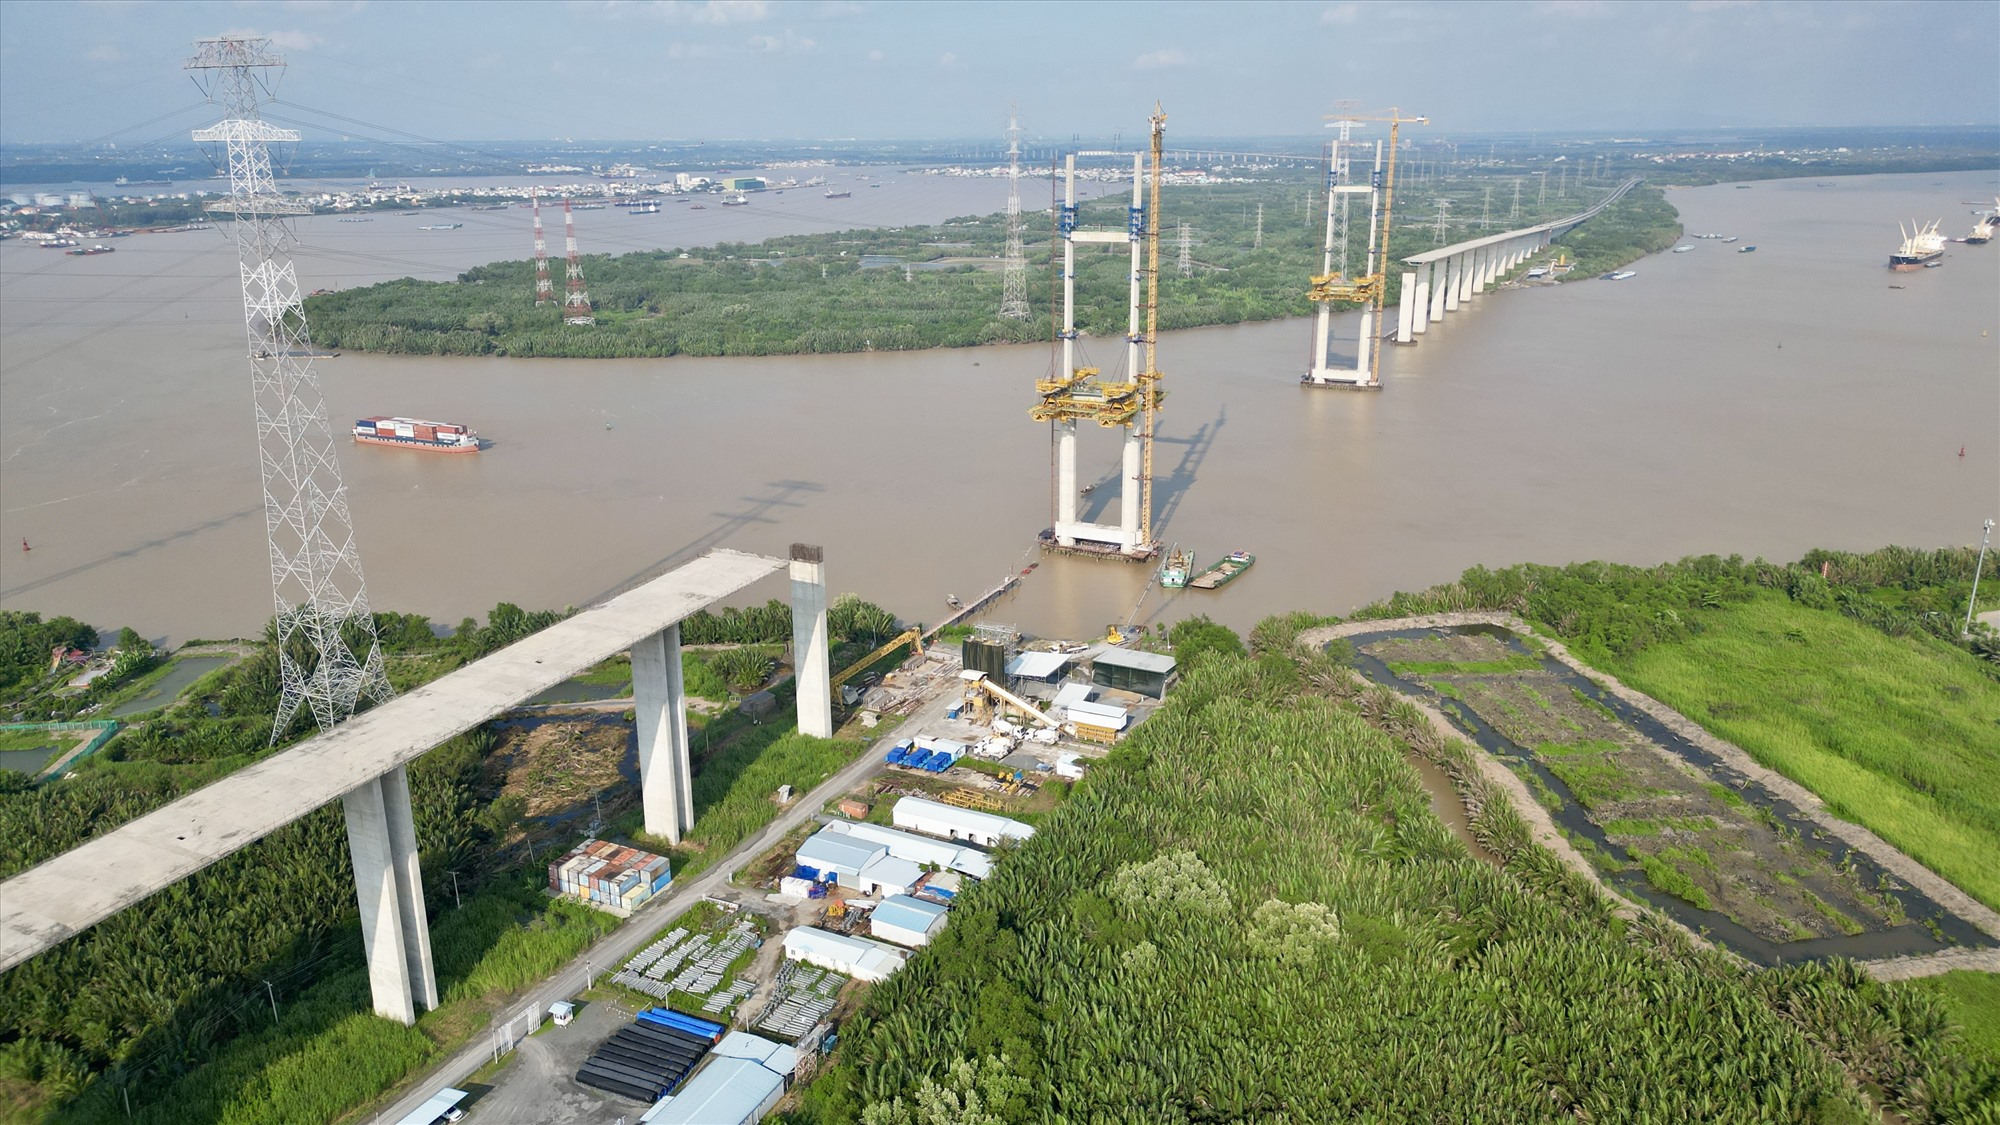 Tuyến cao tốc Bến Lức - Long Thành đi qua huyện Nhà Bè có điểm cuối tại cầu Bình Khánh. Cầu này khởi công 8.2015, dài 2,76 km, nhịp chính dài 375 m bắc qua sông Soài Rạp, nối huyện Nhà Bè và Cần Giờ. Đây là một trong những công trình quan trọng nhất thuộc dự án.